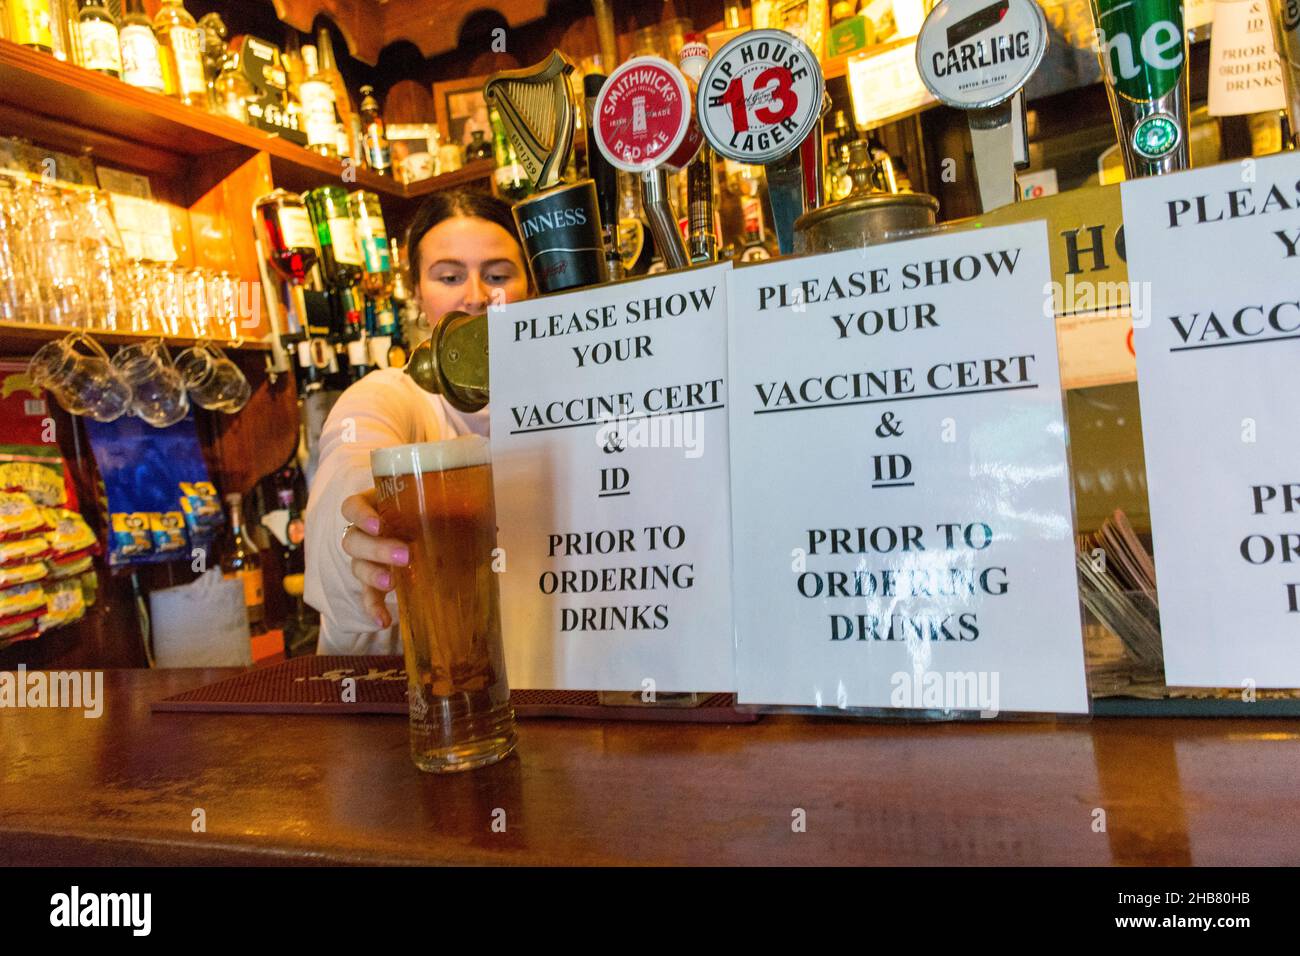 Ardara, County Donegal, Irland. 17th. Dezember 2021. Ein Pint wird in der Corner House Bar serviert, da heute mit neuen Beschränkungen der Öffnungszeiten gerechnet wird, wobei die Fälle von Omicron Covid-19 steigen. Quelle: Richard Wayman/Alamy Live News Stockfoto